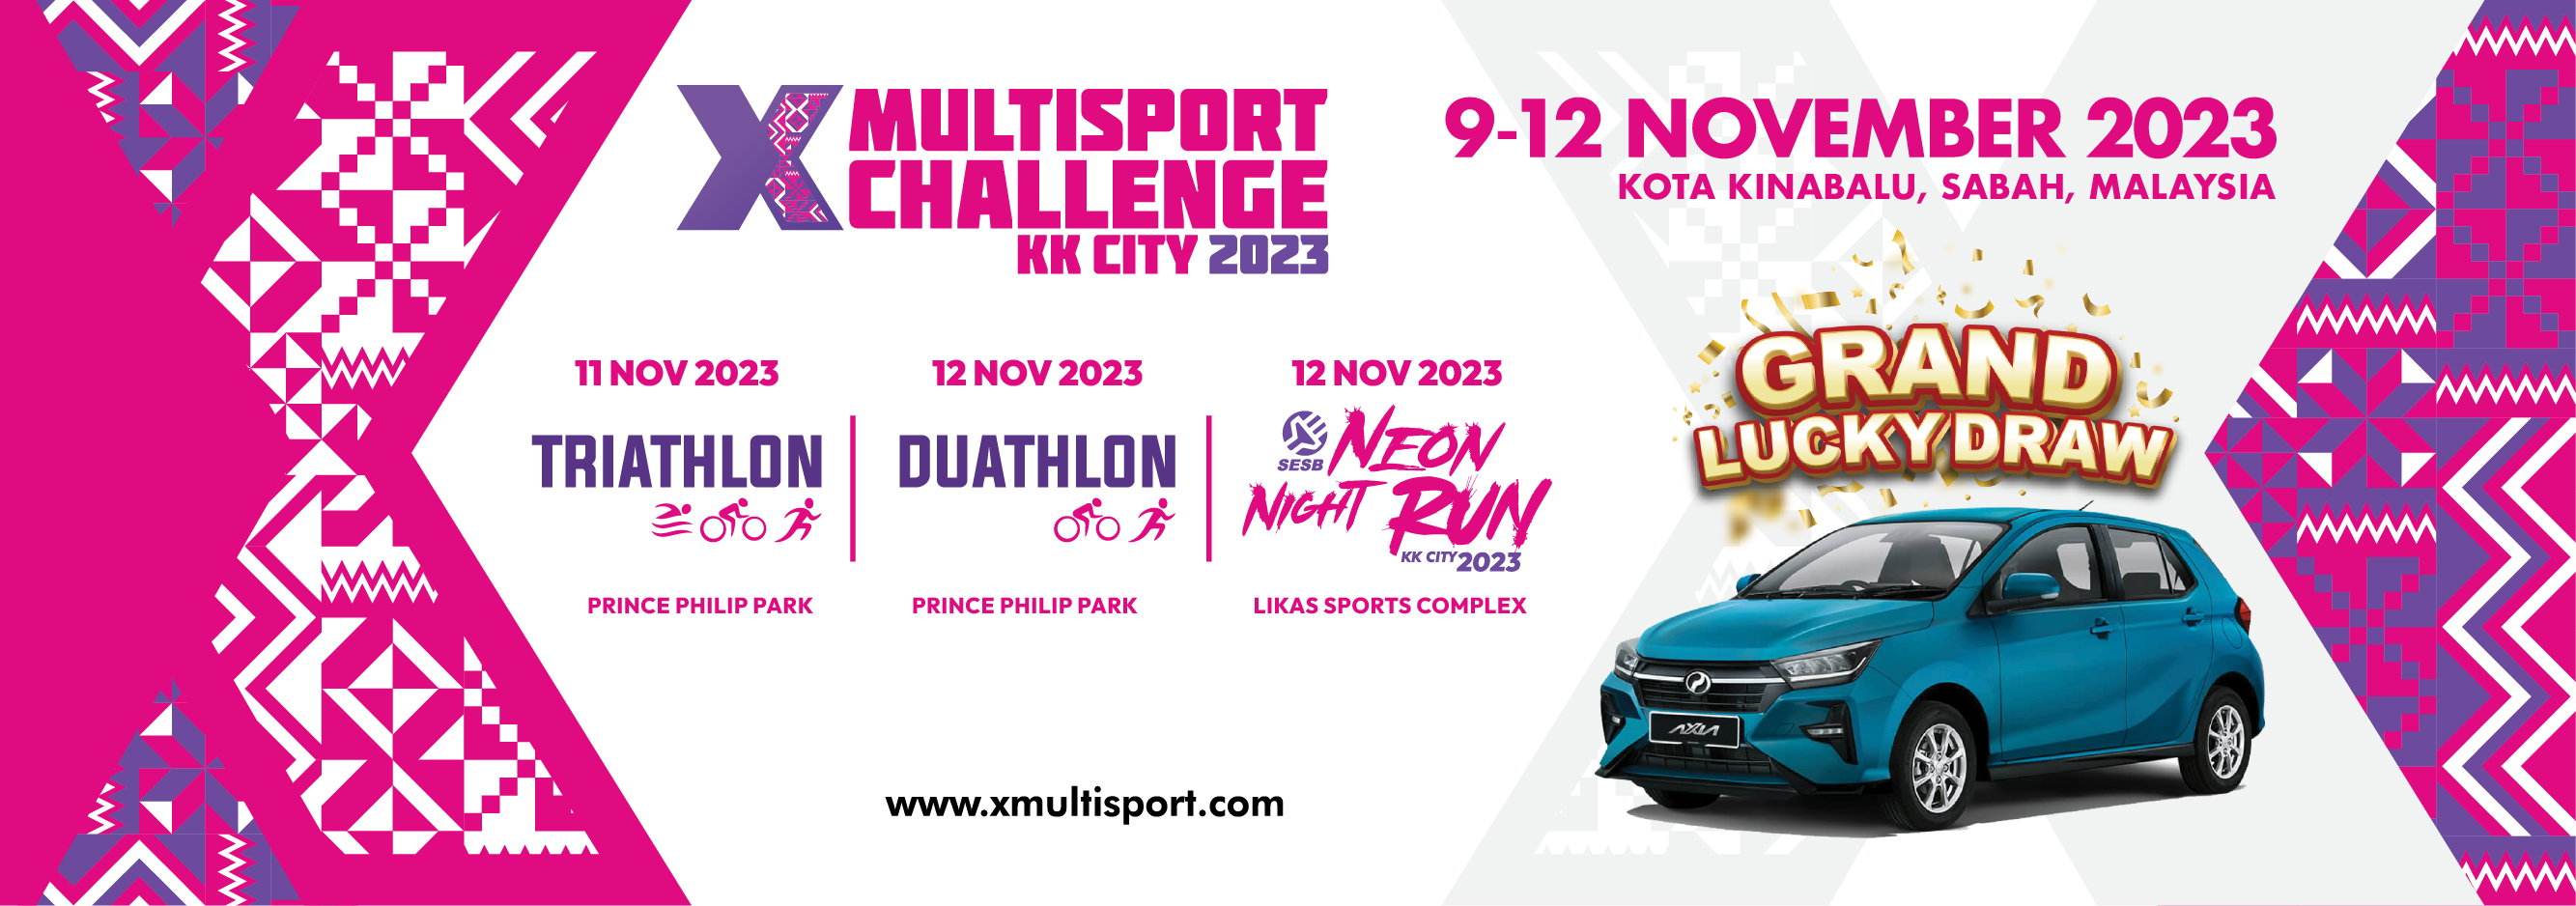 X-multisport Challenge